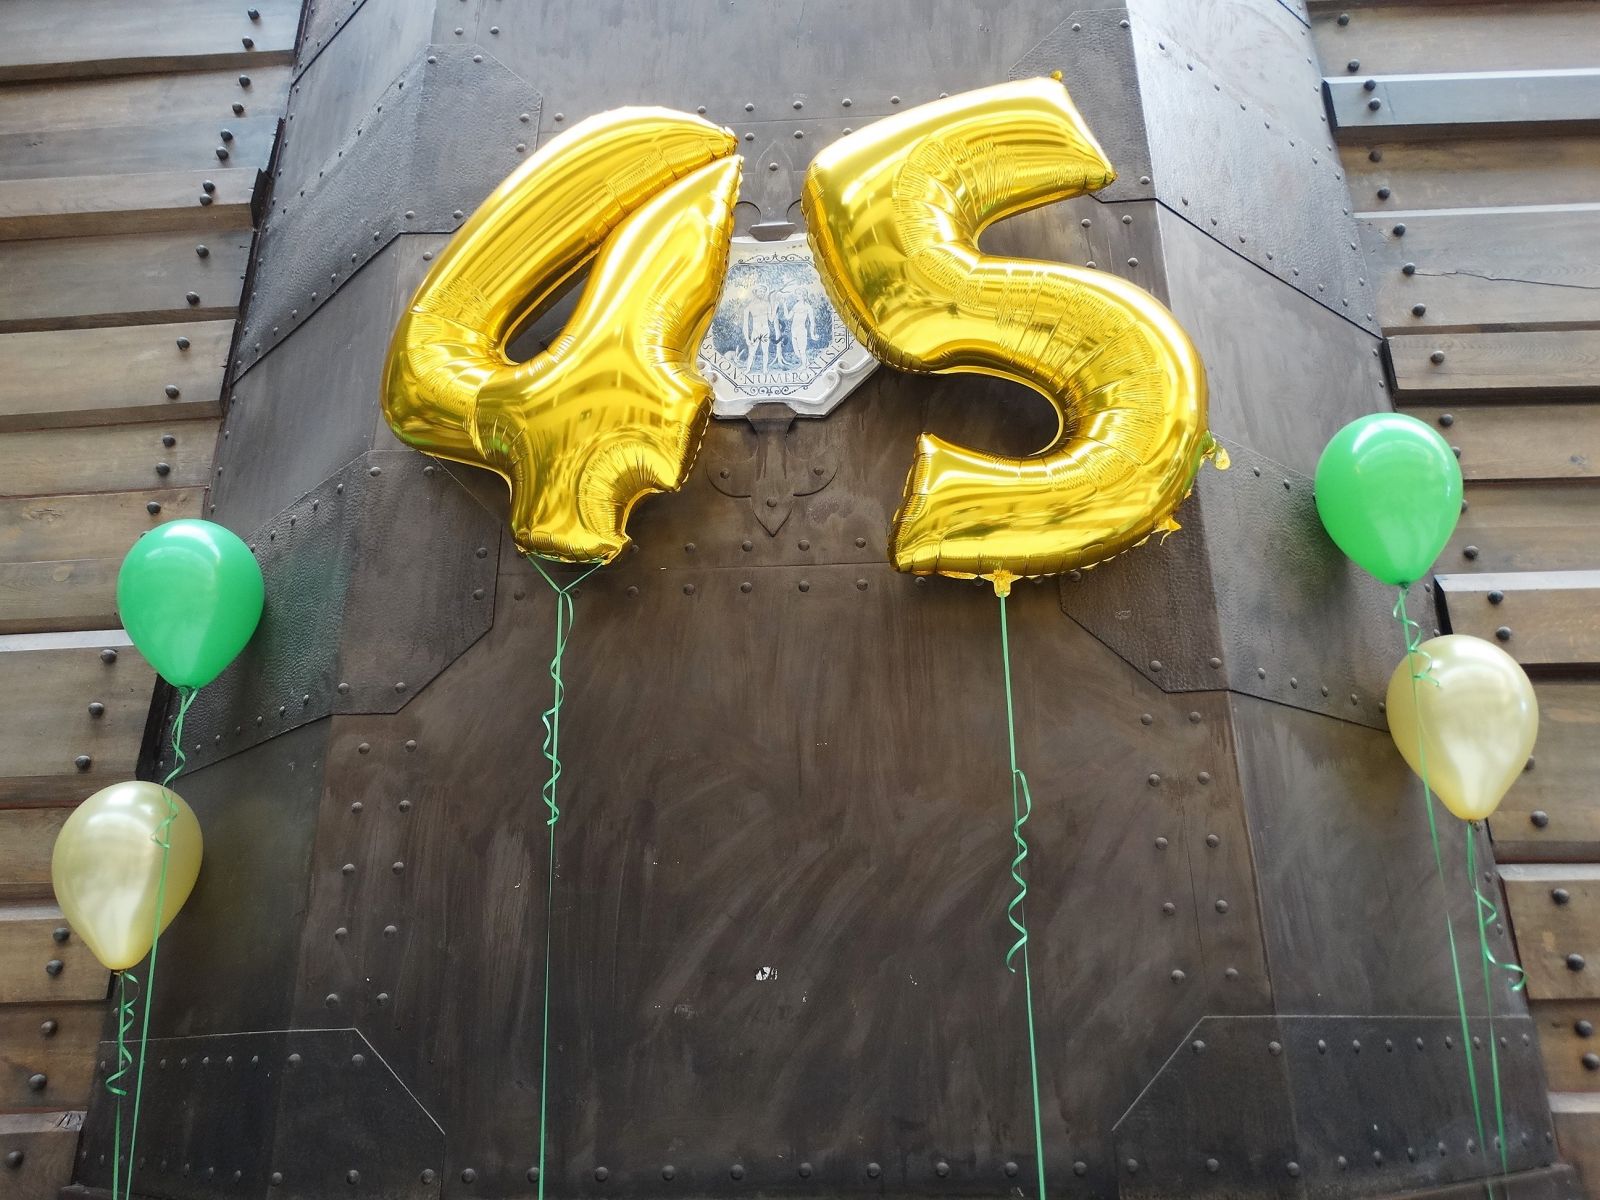 żólte balony jako liczba 45 symbolizujące 45 jubileusz powstania Domu Pomocy Społecznej Budowlani